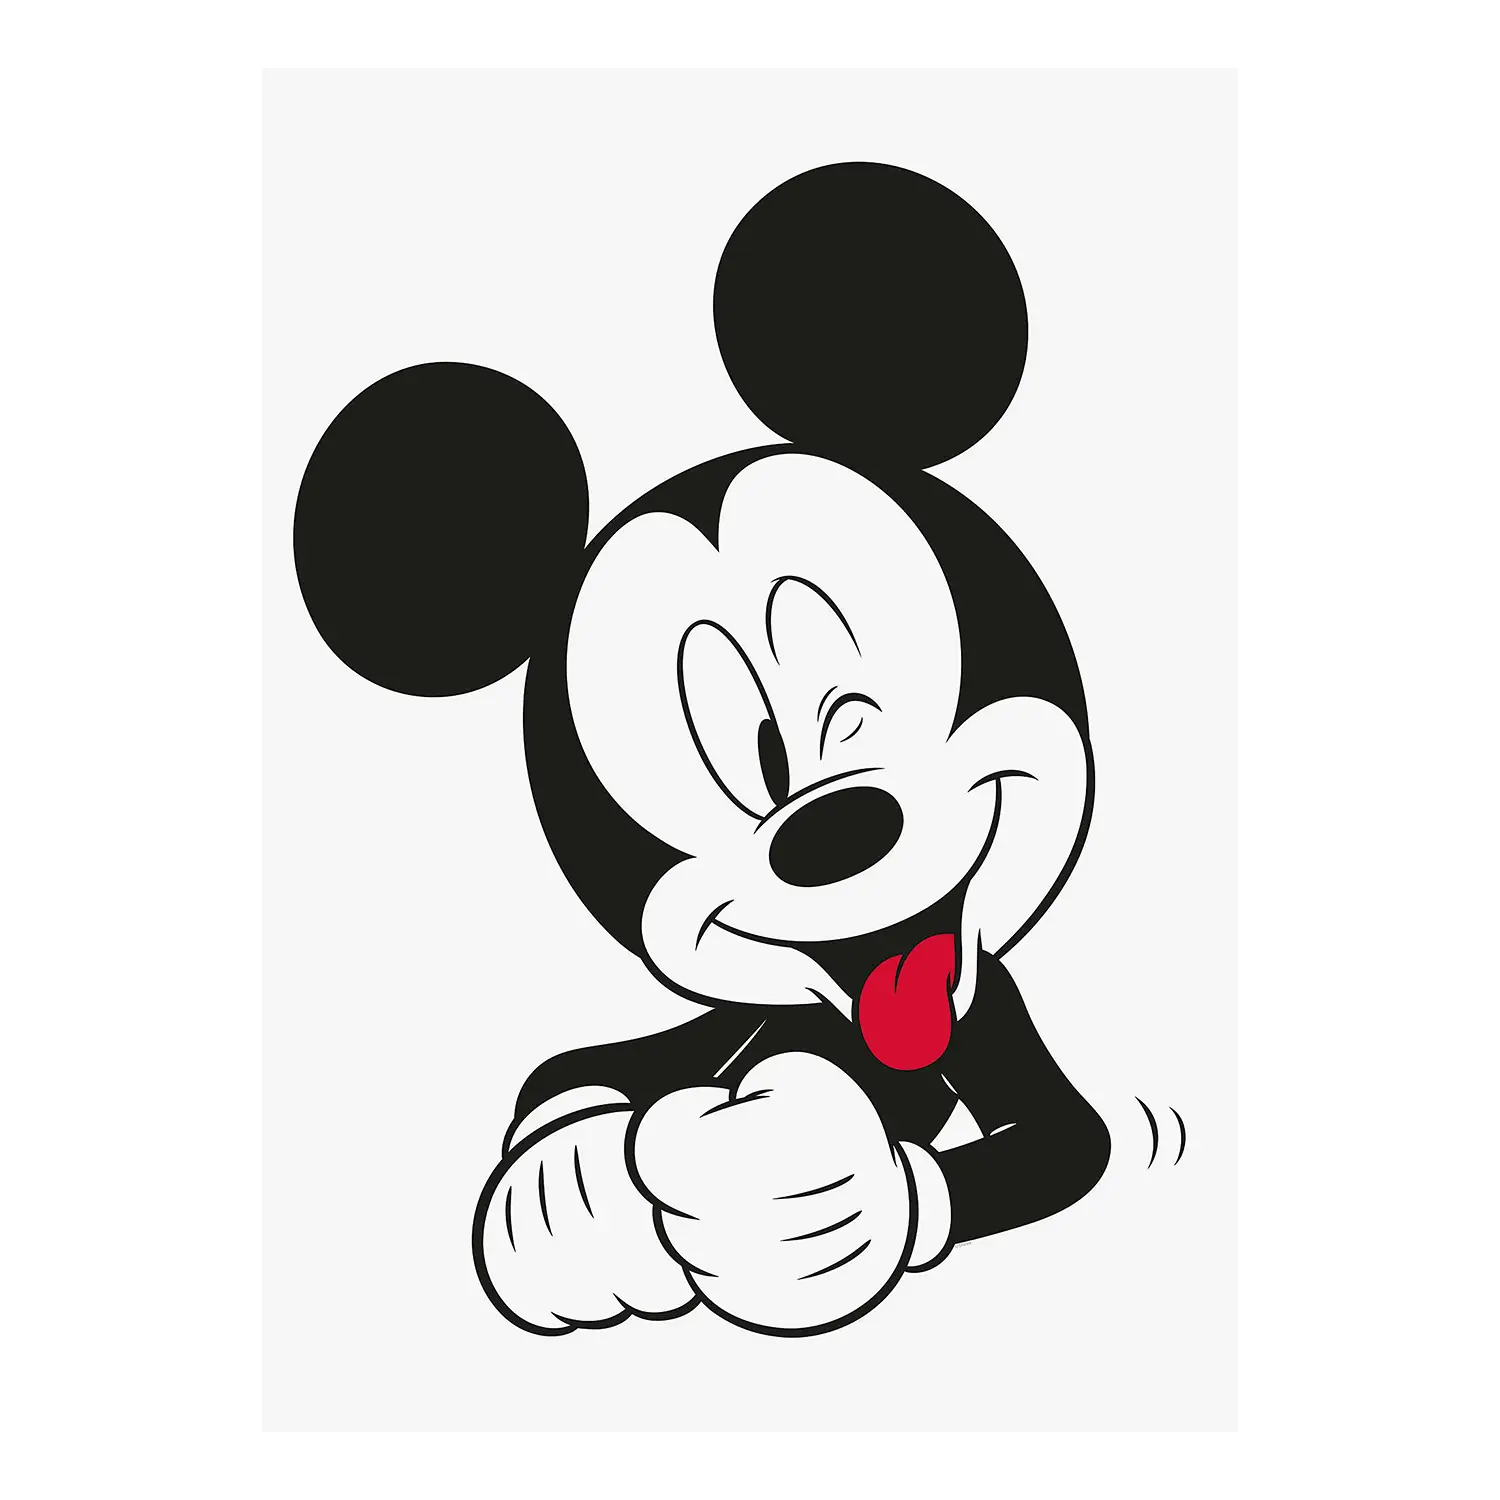 Wandbild Mouse Mickey Funny